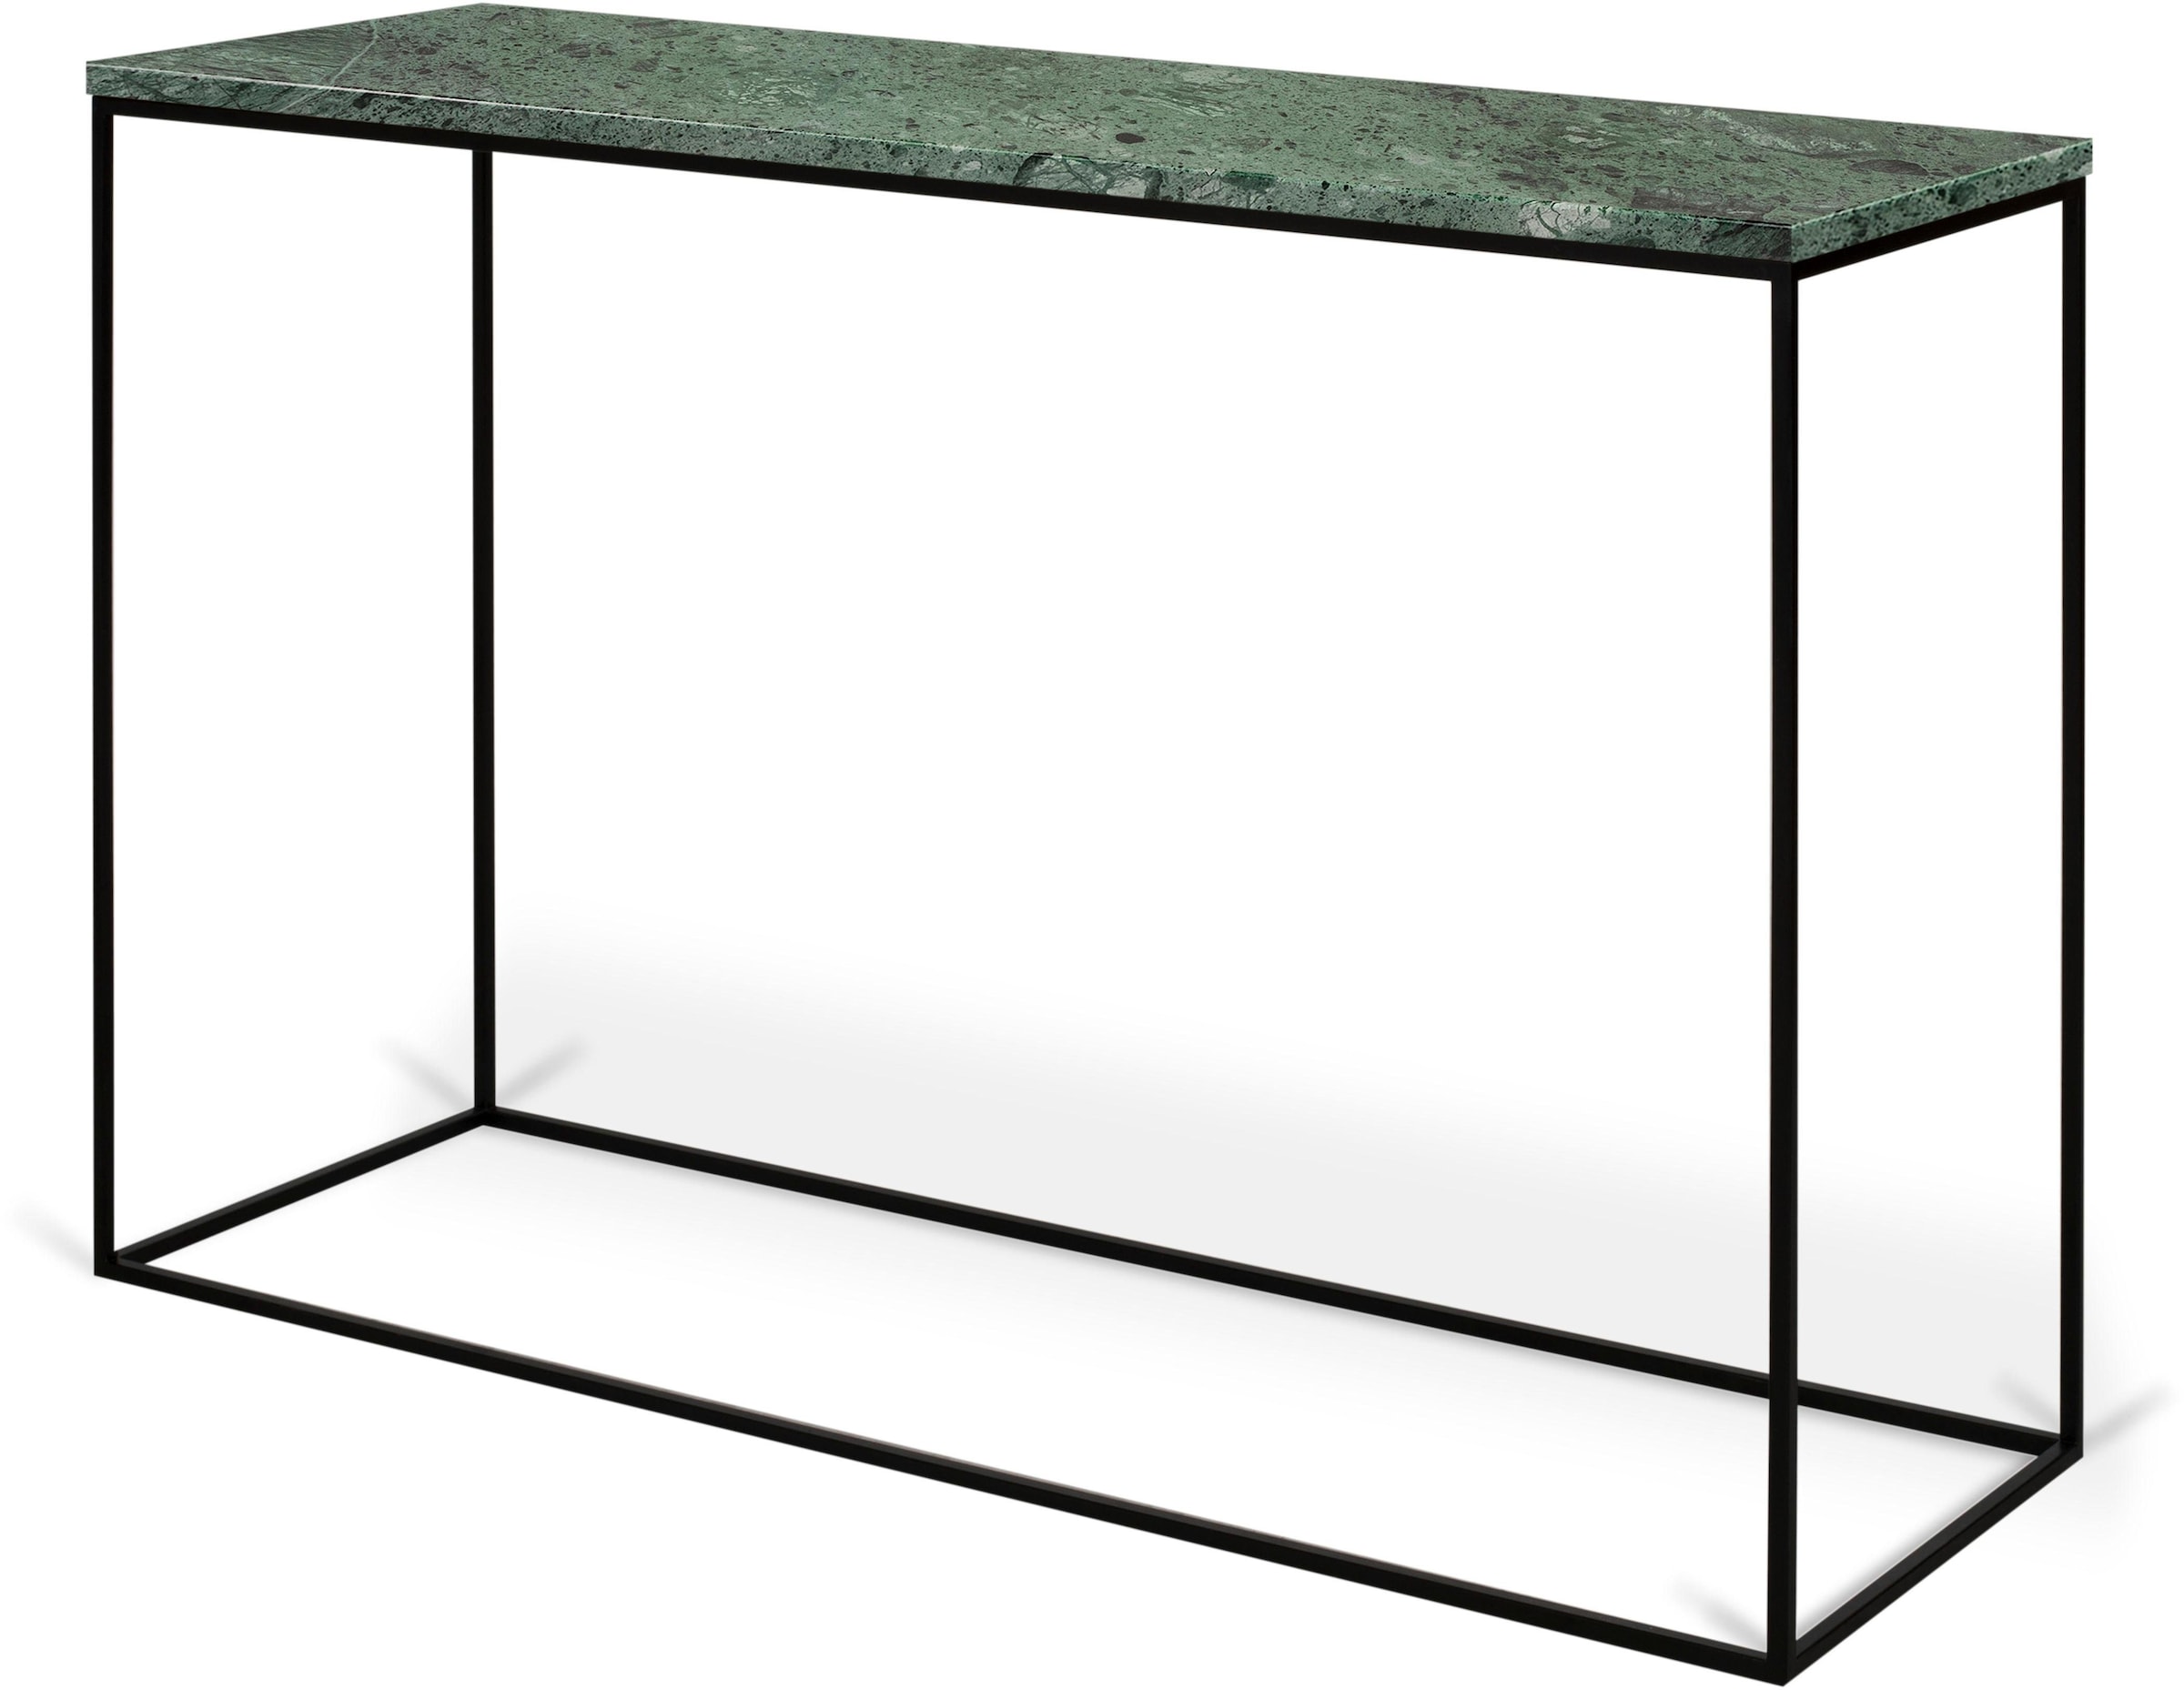 TemaHome Konsolentisch »Gleam«, mit schöner Marmor Tischplatte und edlem schwarzen Metallgestell